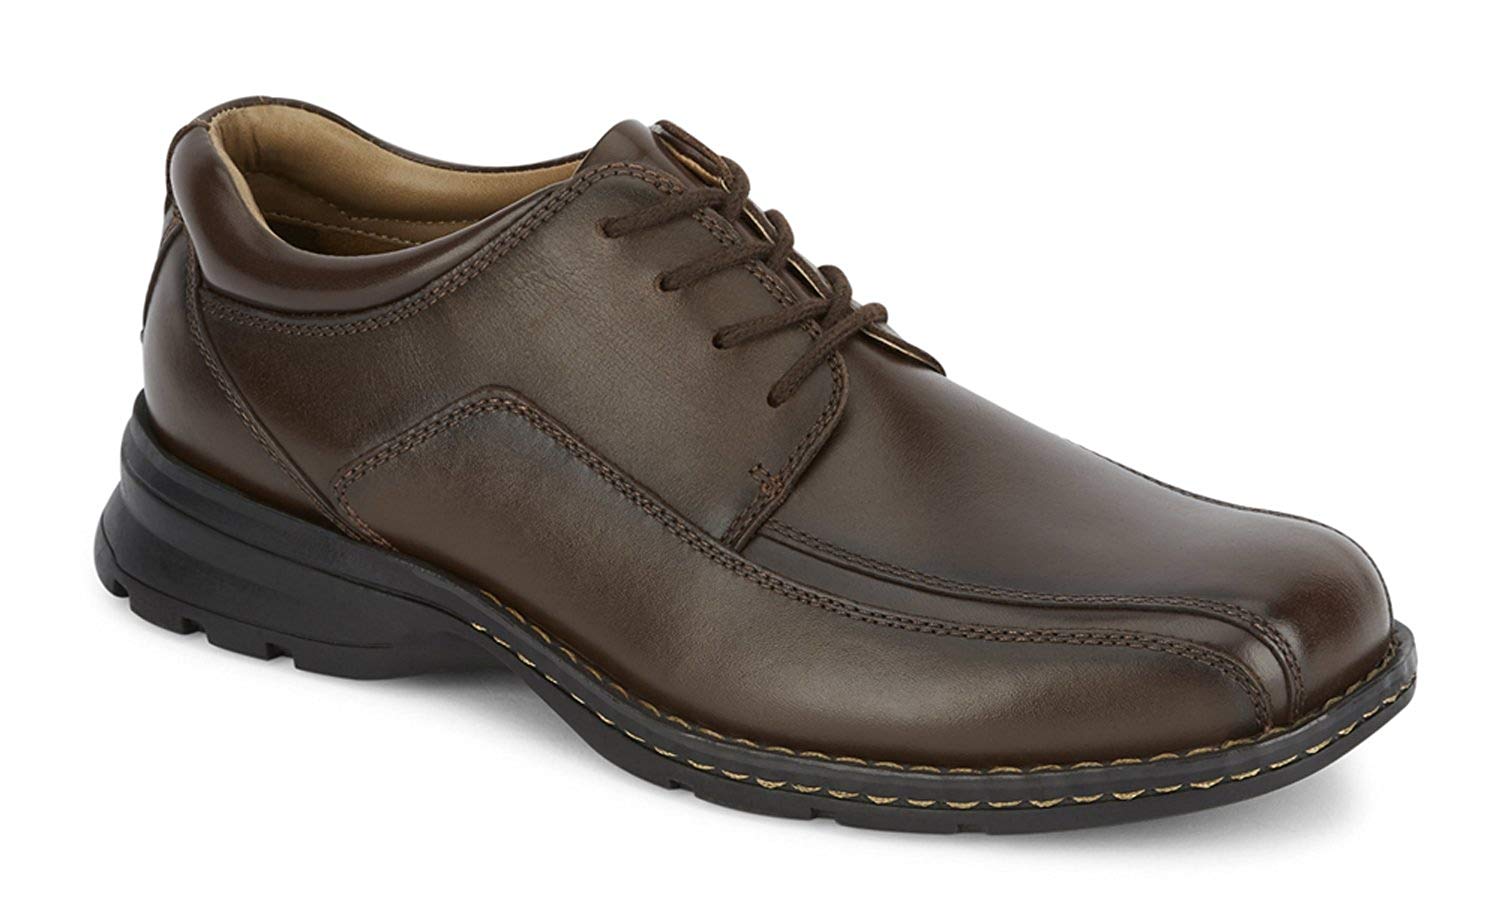 Dockers Men’s Trustee Leather Oxford Dress Shoe, Dark Tan, Size 9.5 ...